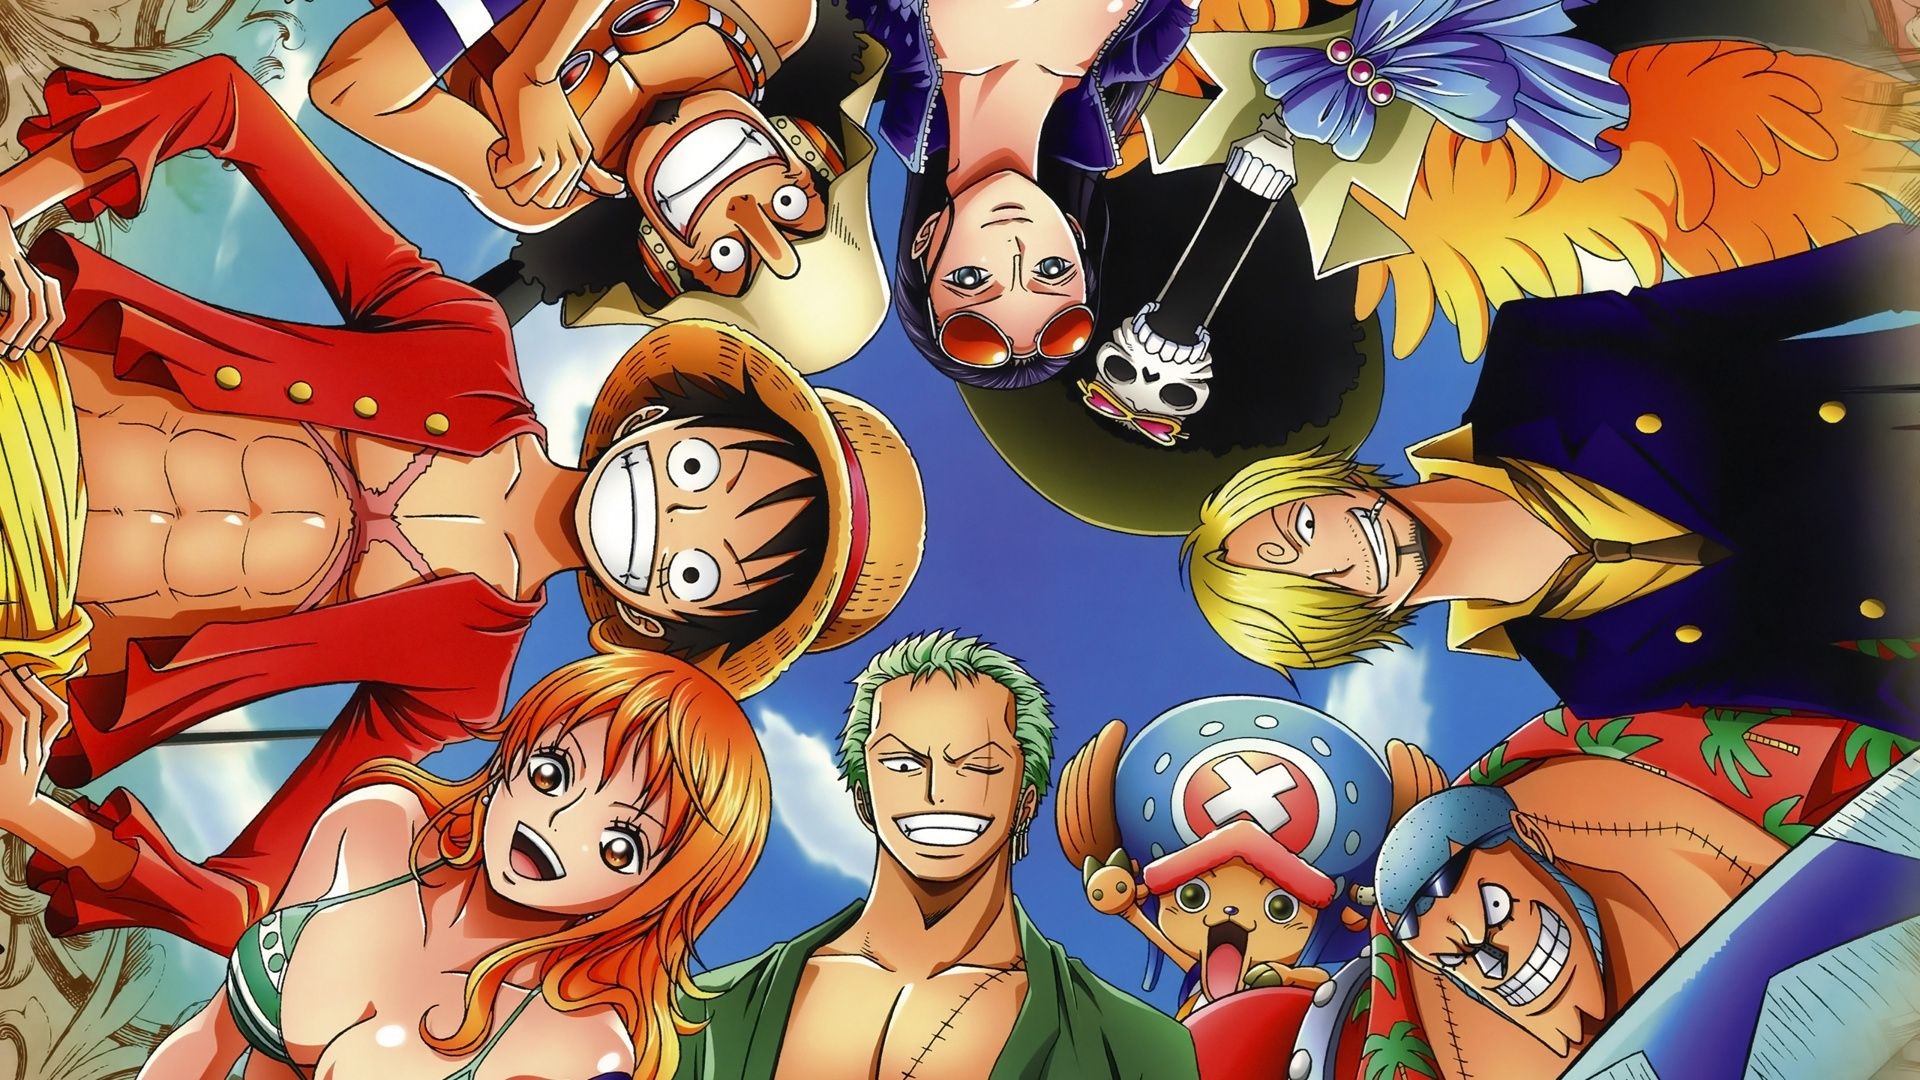 Ảnh anime One Piece: Hãy cùng khám phá vũ trụ đầy màu sắc và phiêu lưu bất tận cùng One Piece. Các nhân vật tuyệt vời và câu chuyện hấp dẫn trong anime này chắc chắn sẽ khiến bạn không thể bỏ qua. Mở cánh cửa của trí tưởng tượng và xem ảnh anime One Piece ngay hôm nay để bắt đầu hành trình!